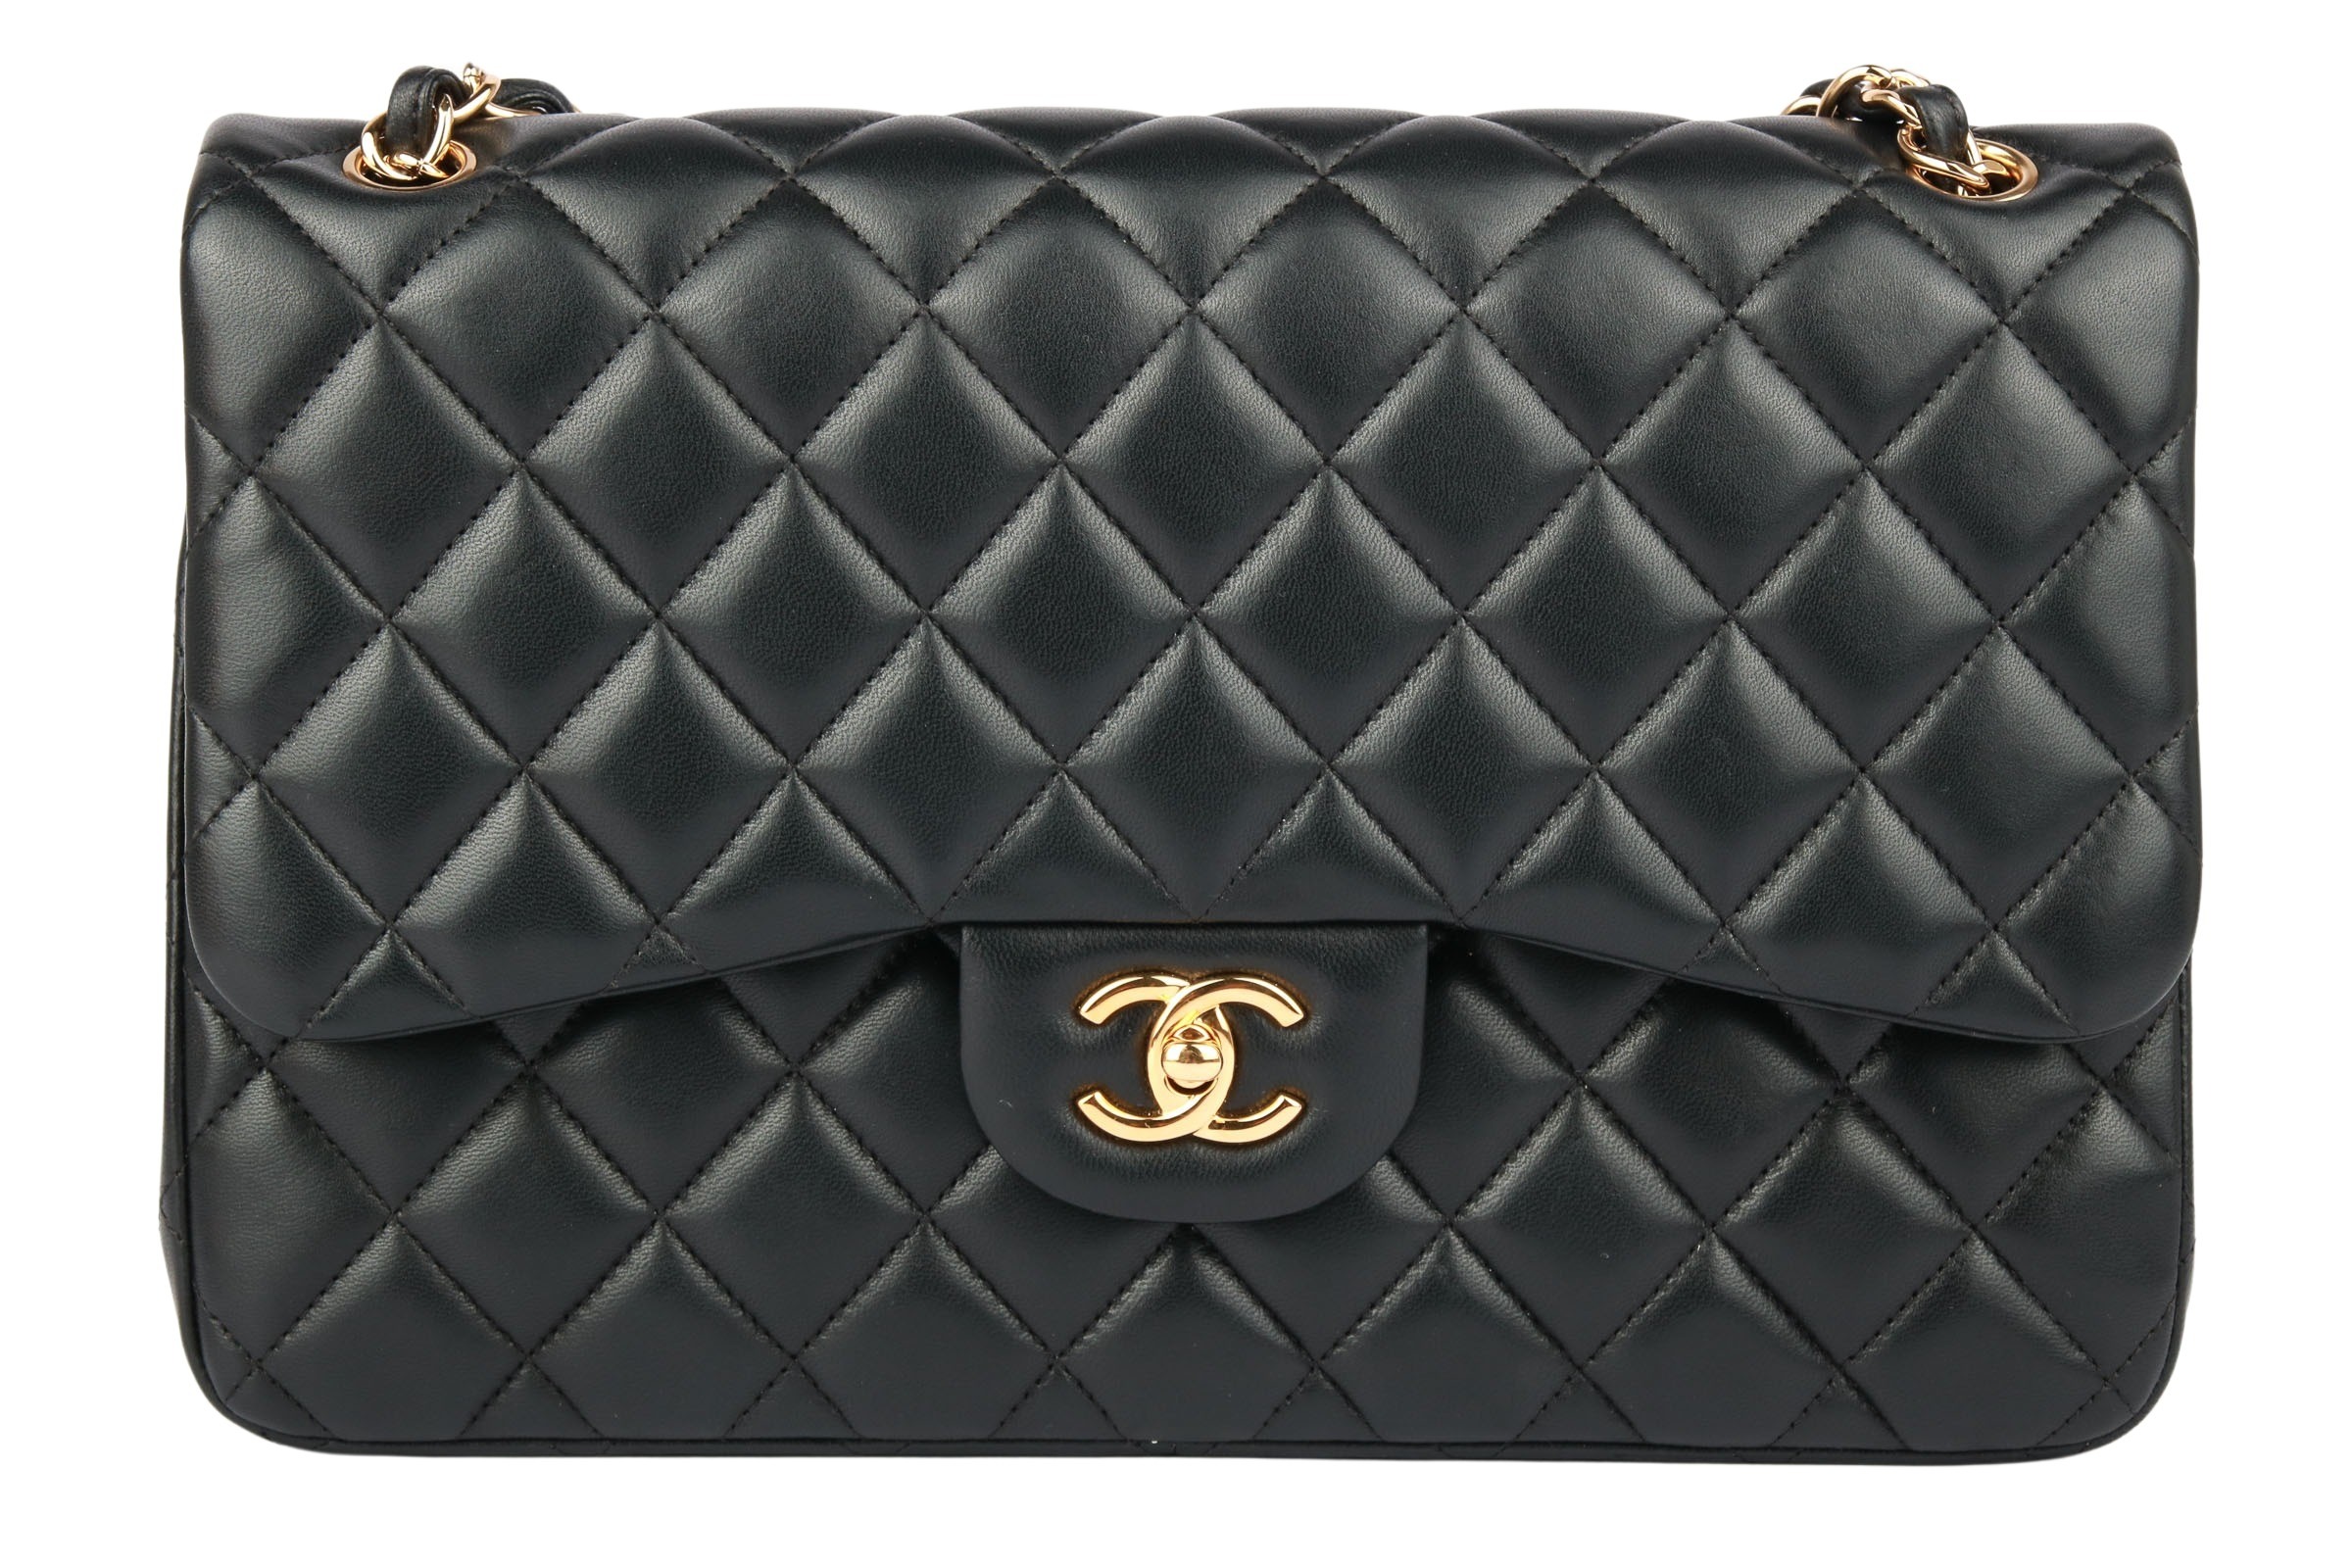 Chanel Jumbo Double Flap Bag Black